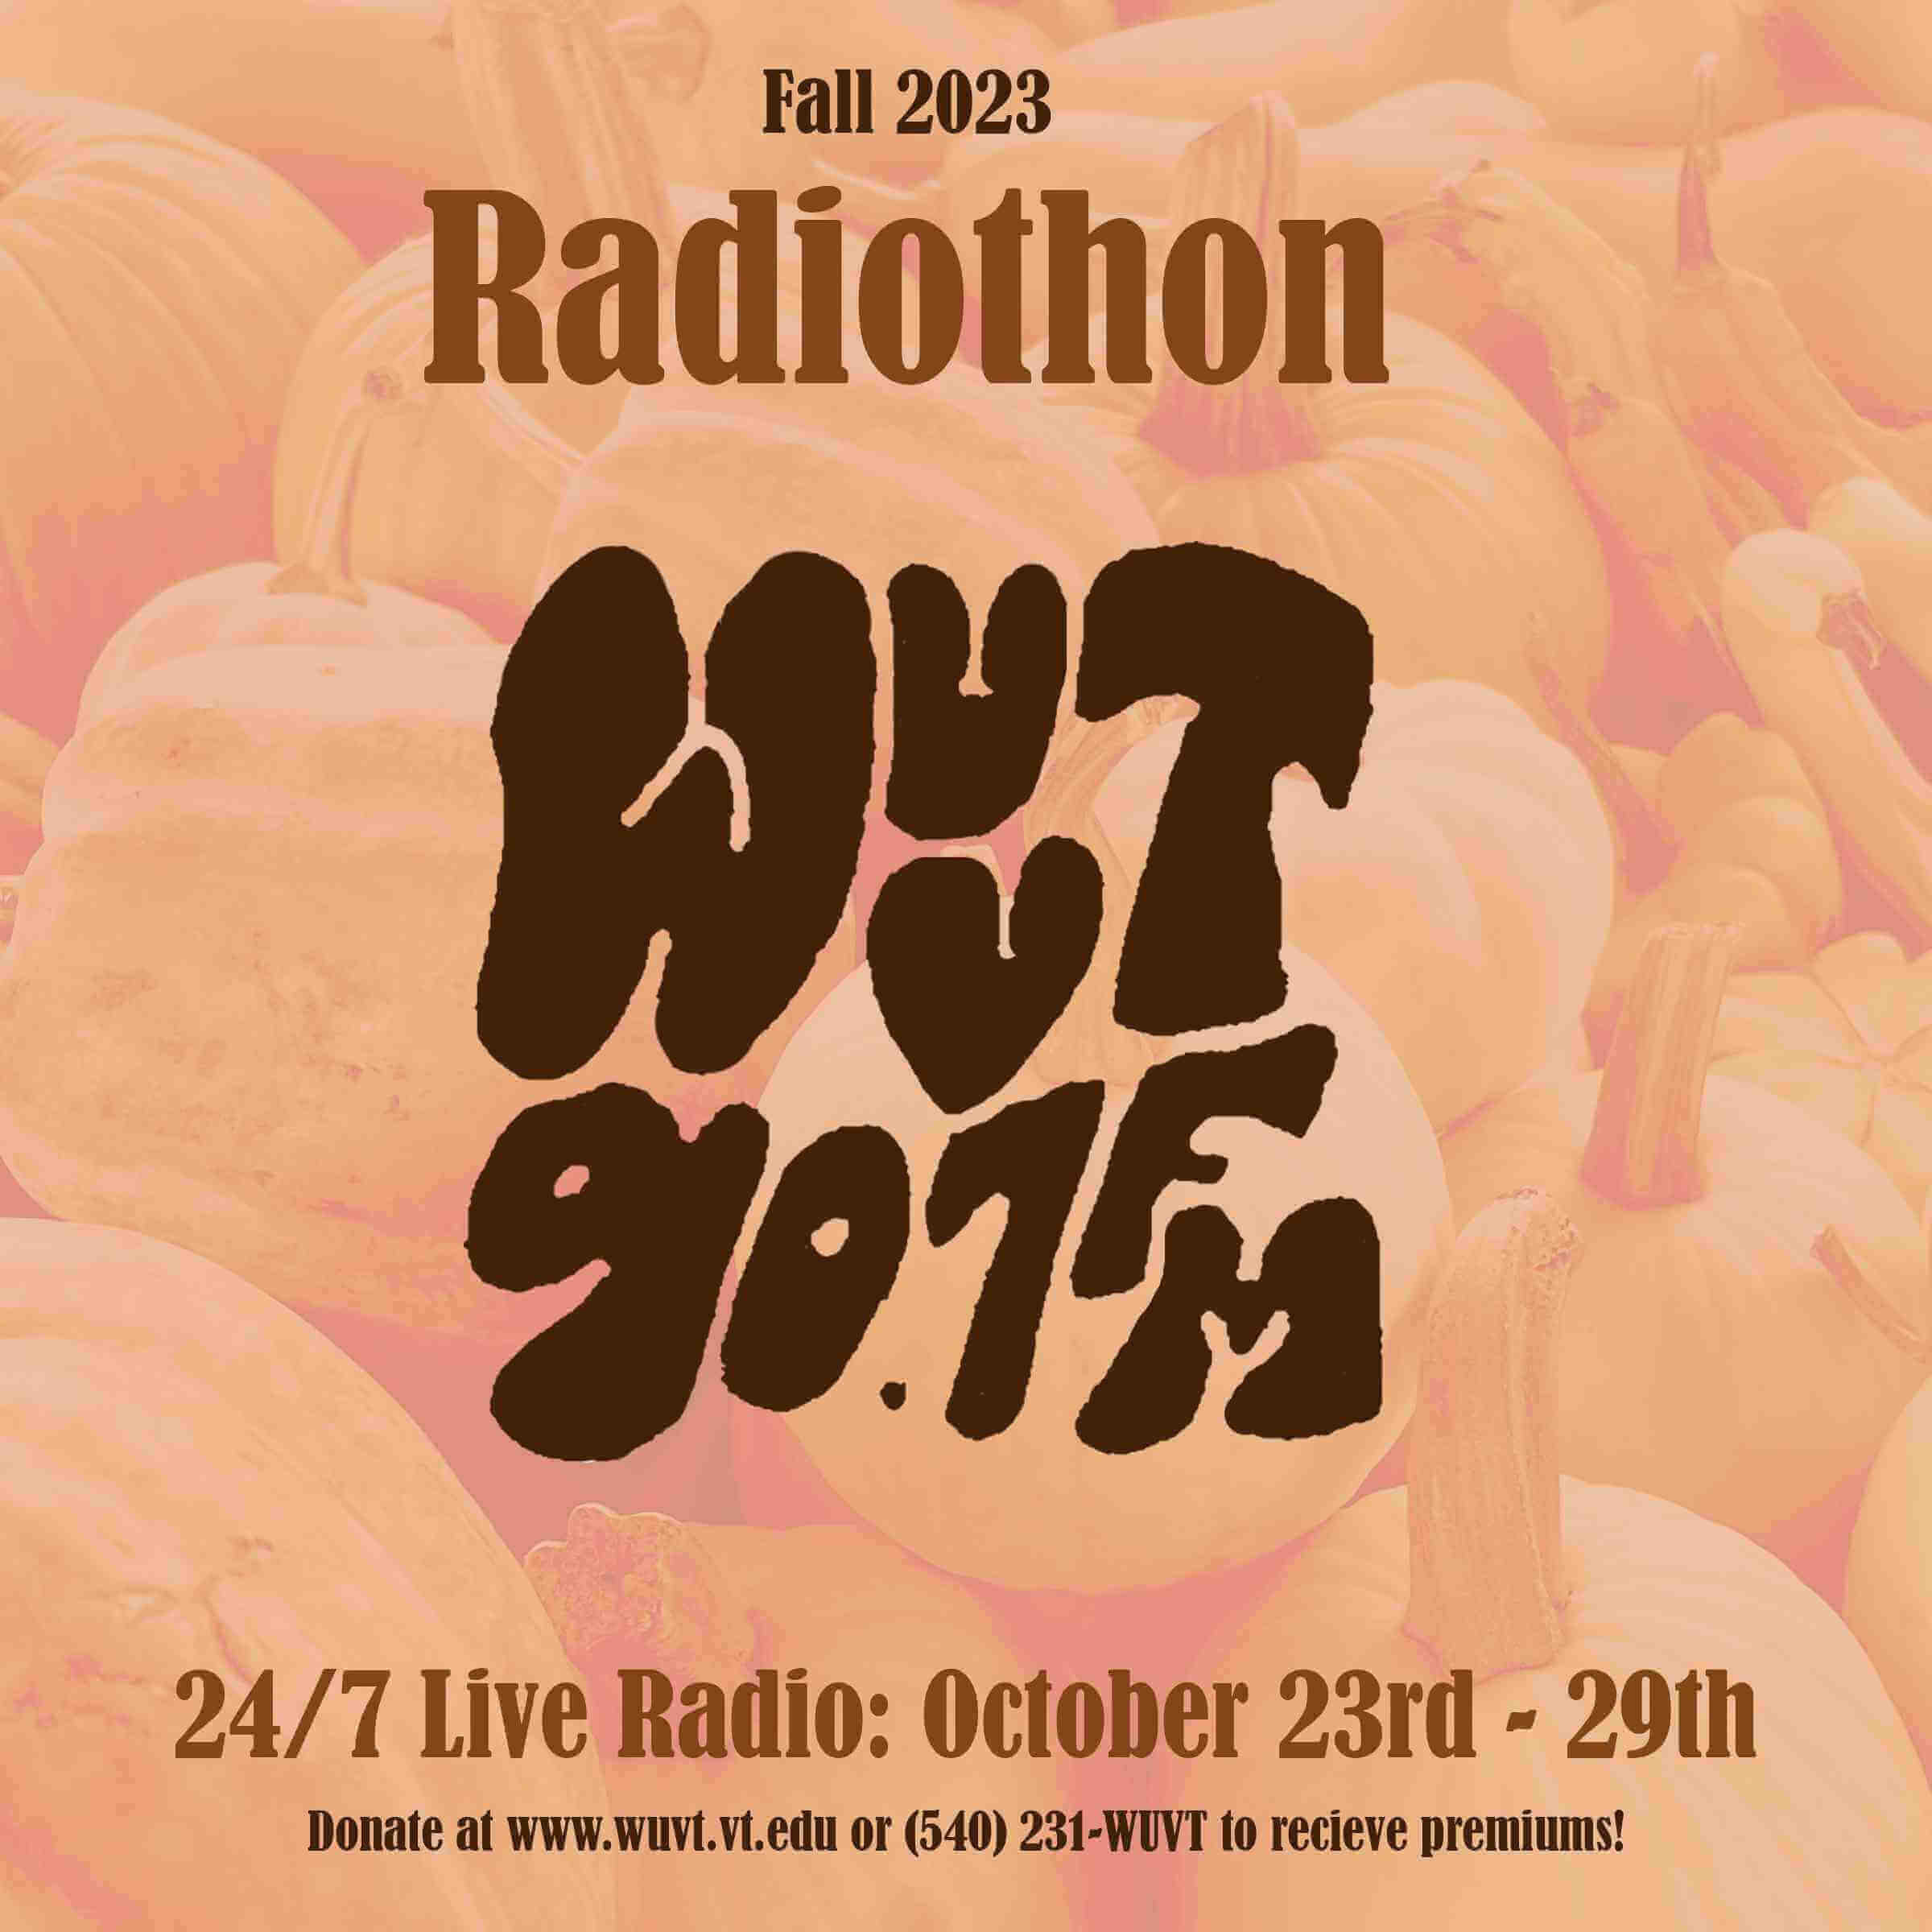 Radiothon Schedule